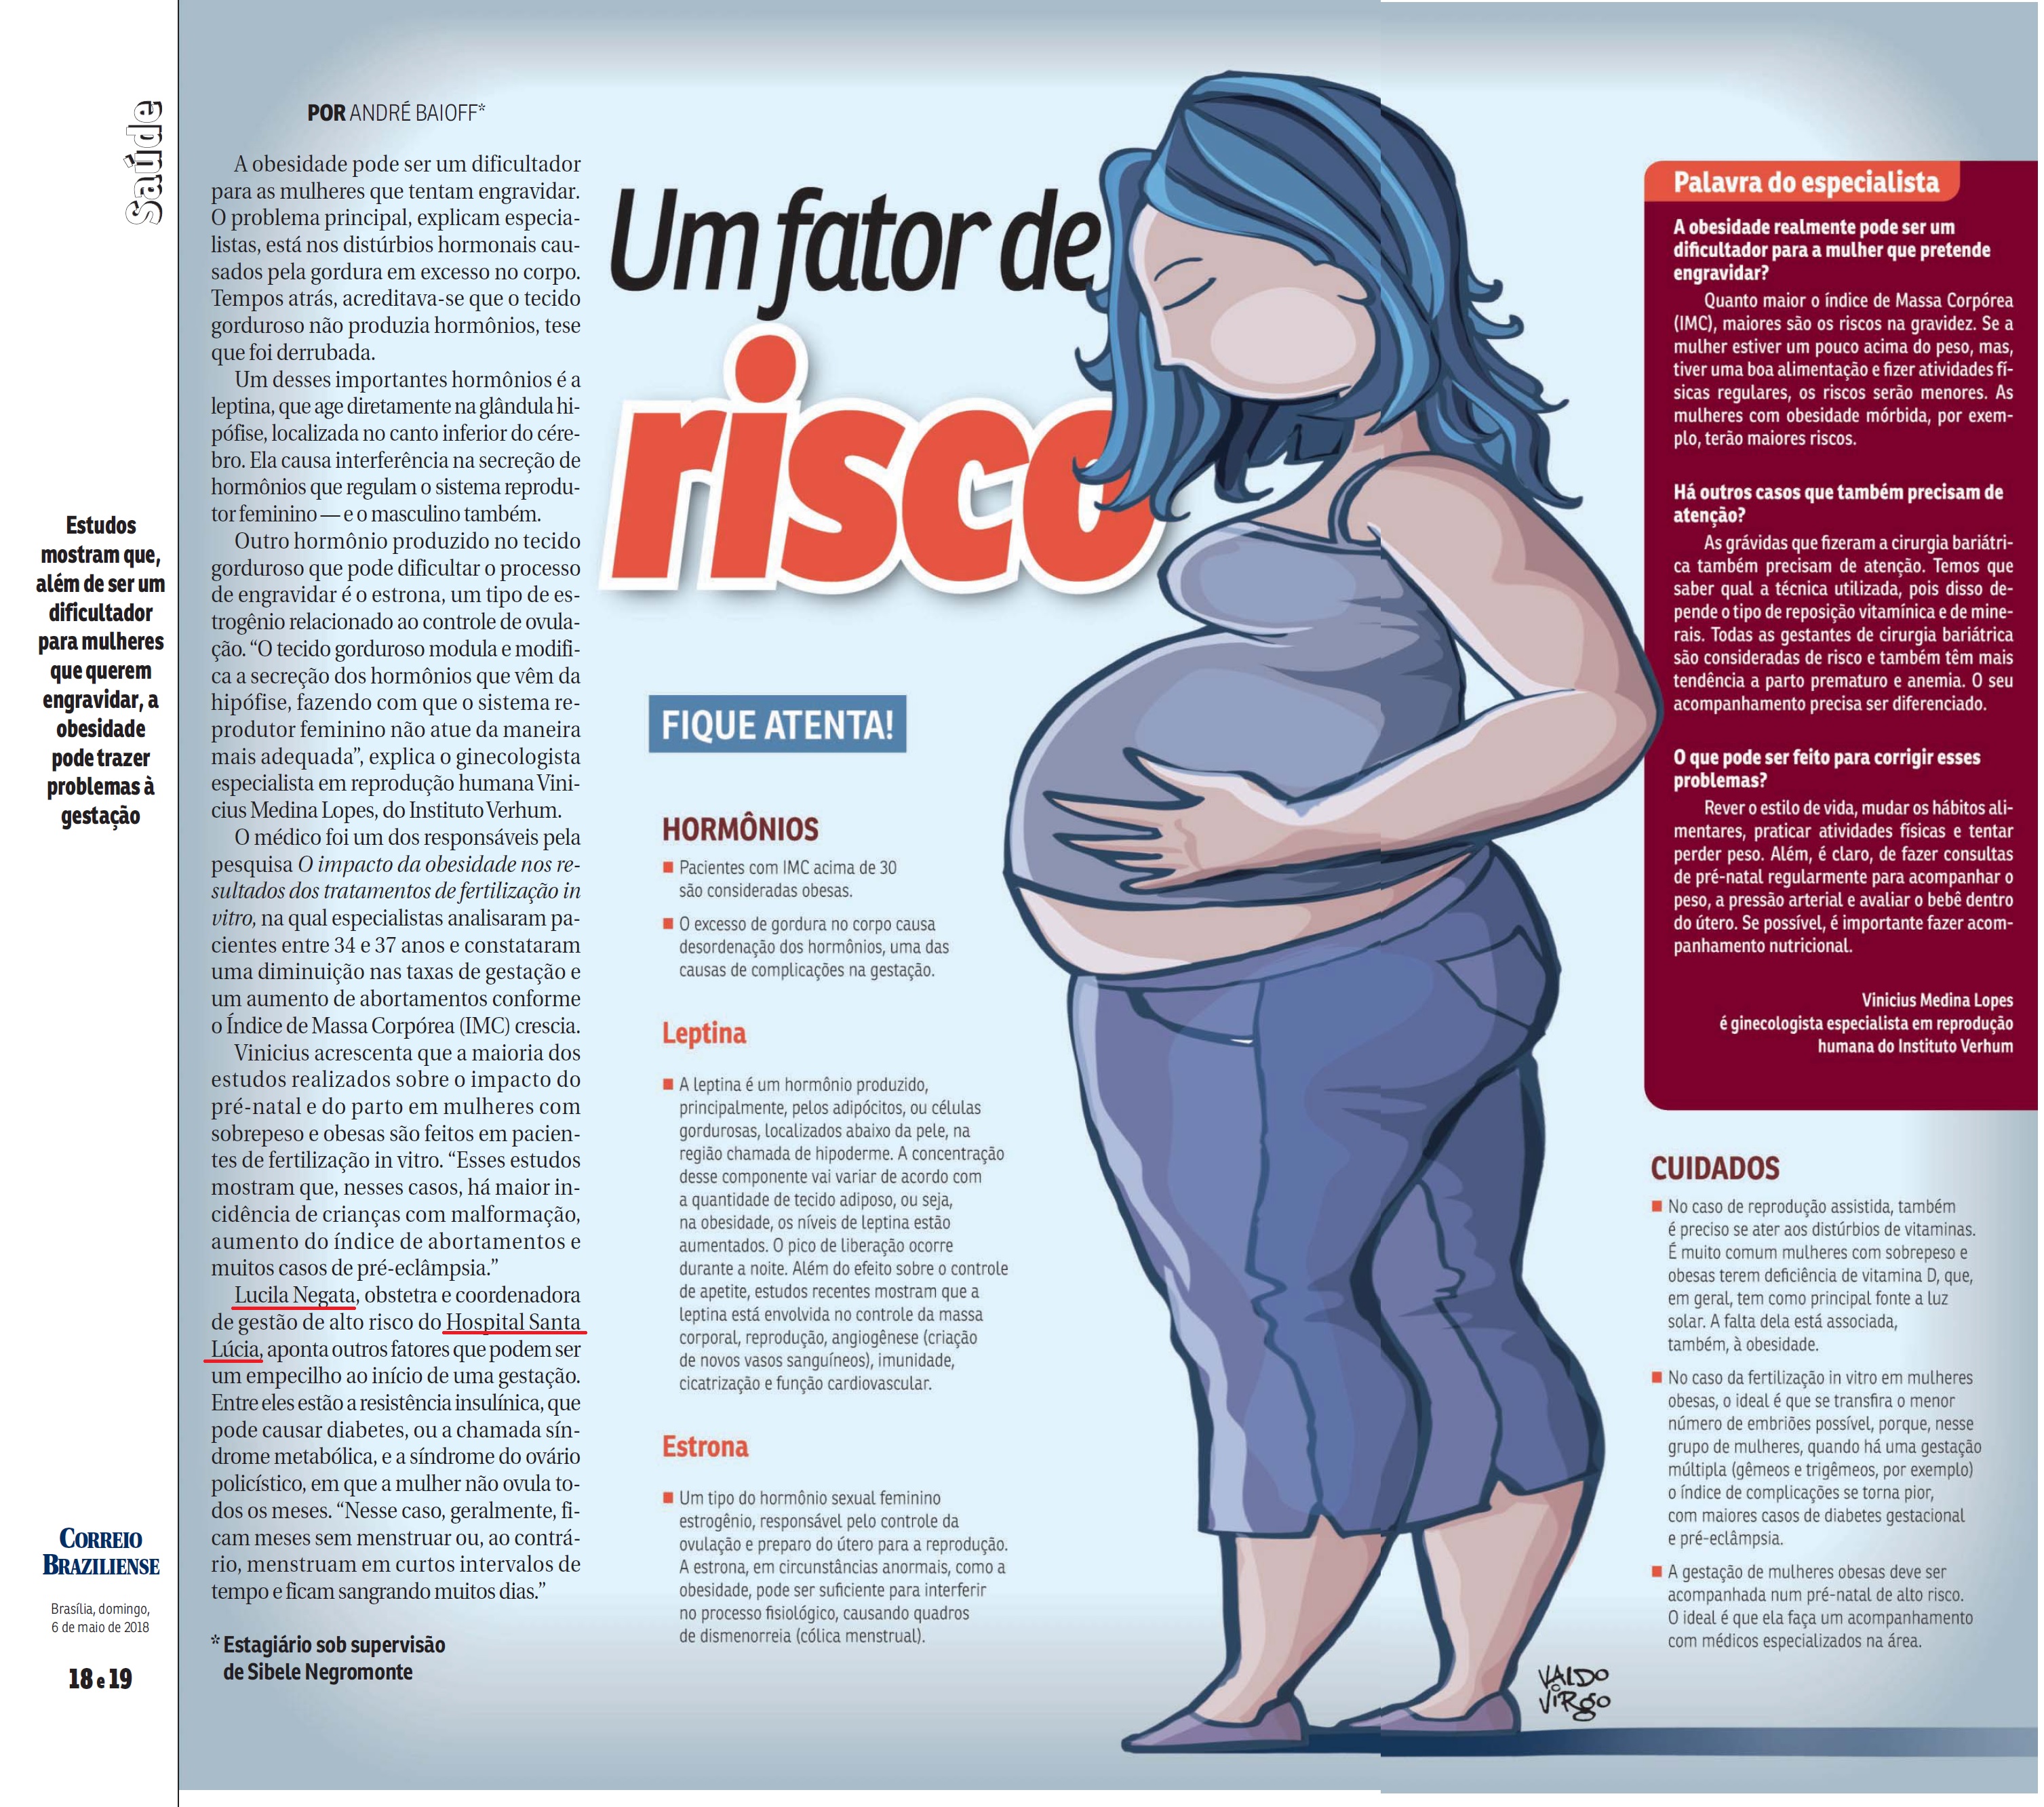 Revista do Correio - Dra. Lucila Nagata HSLS - 06-05-2018